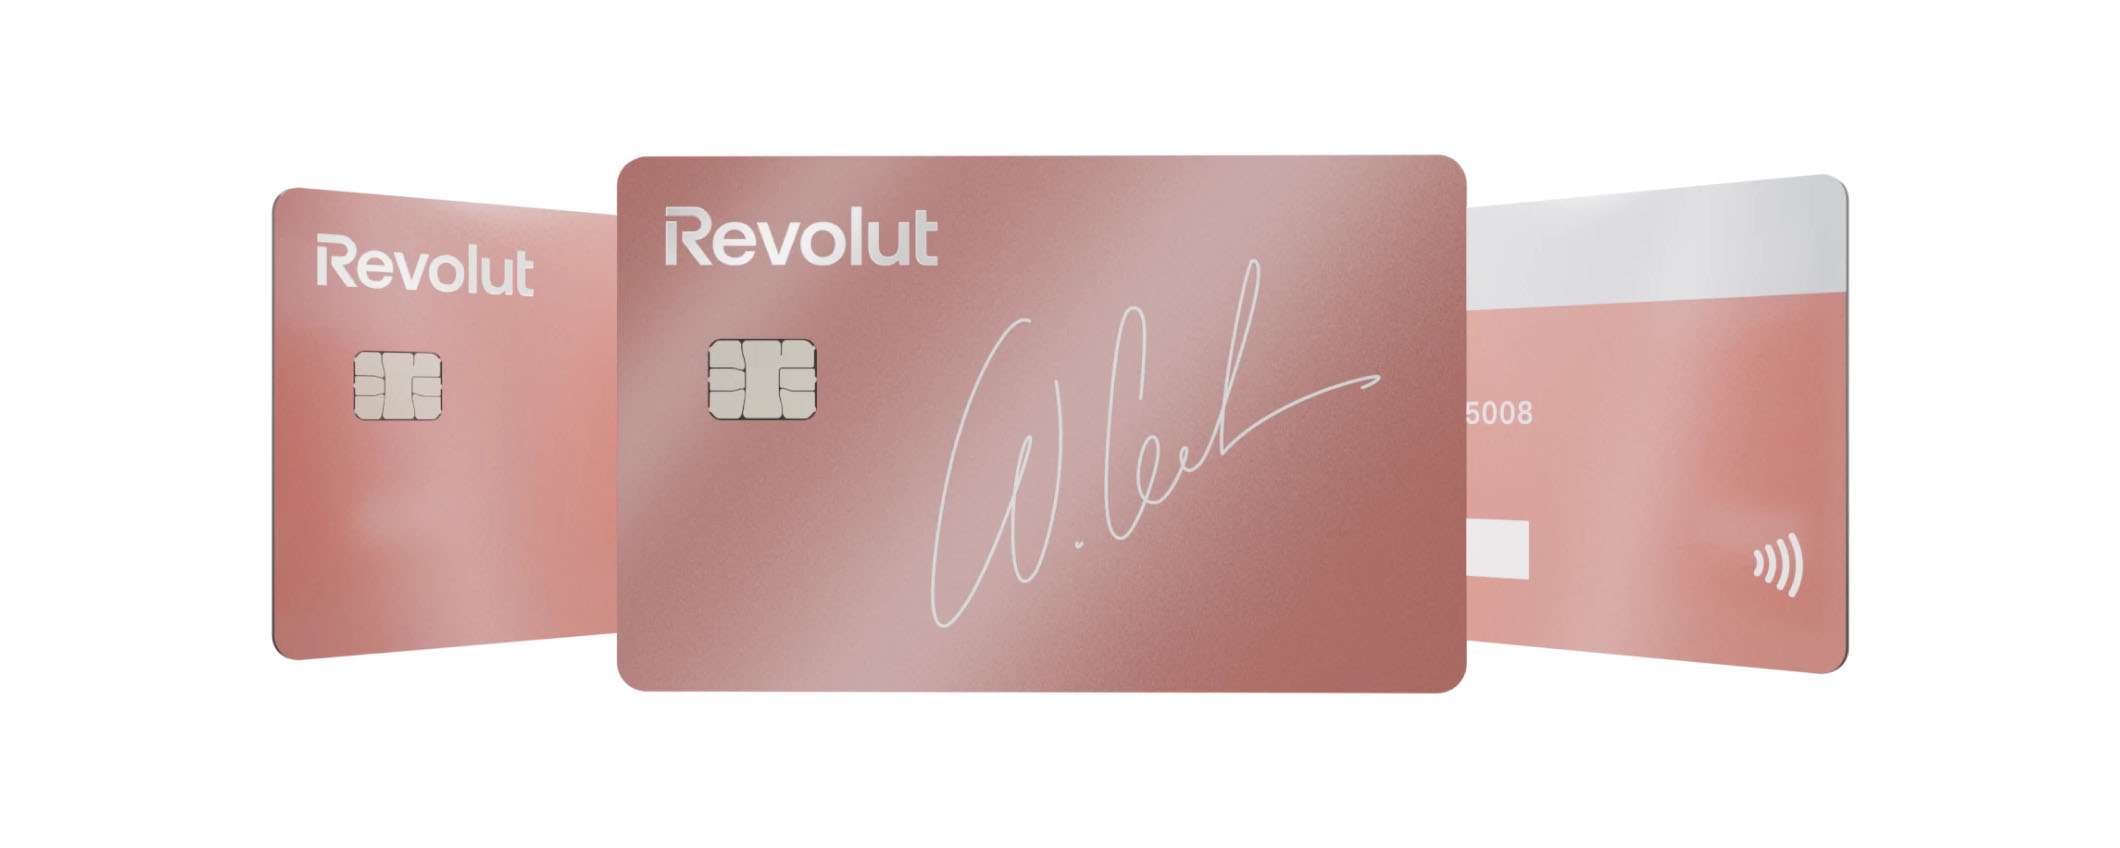 Revolut Premium: un conto comodo che puoi provare gratis 3 mesi